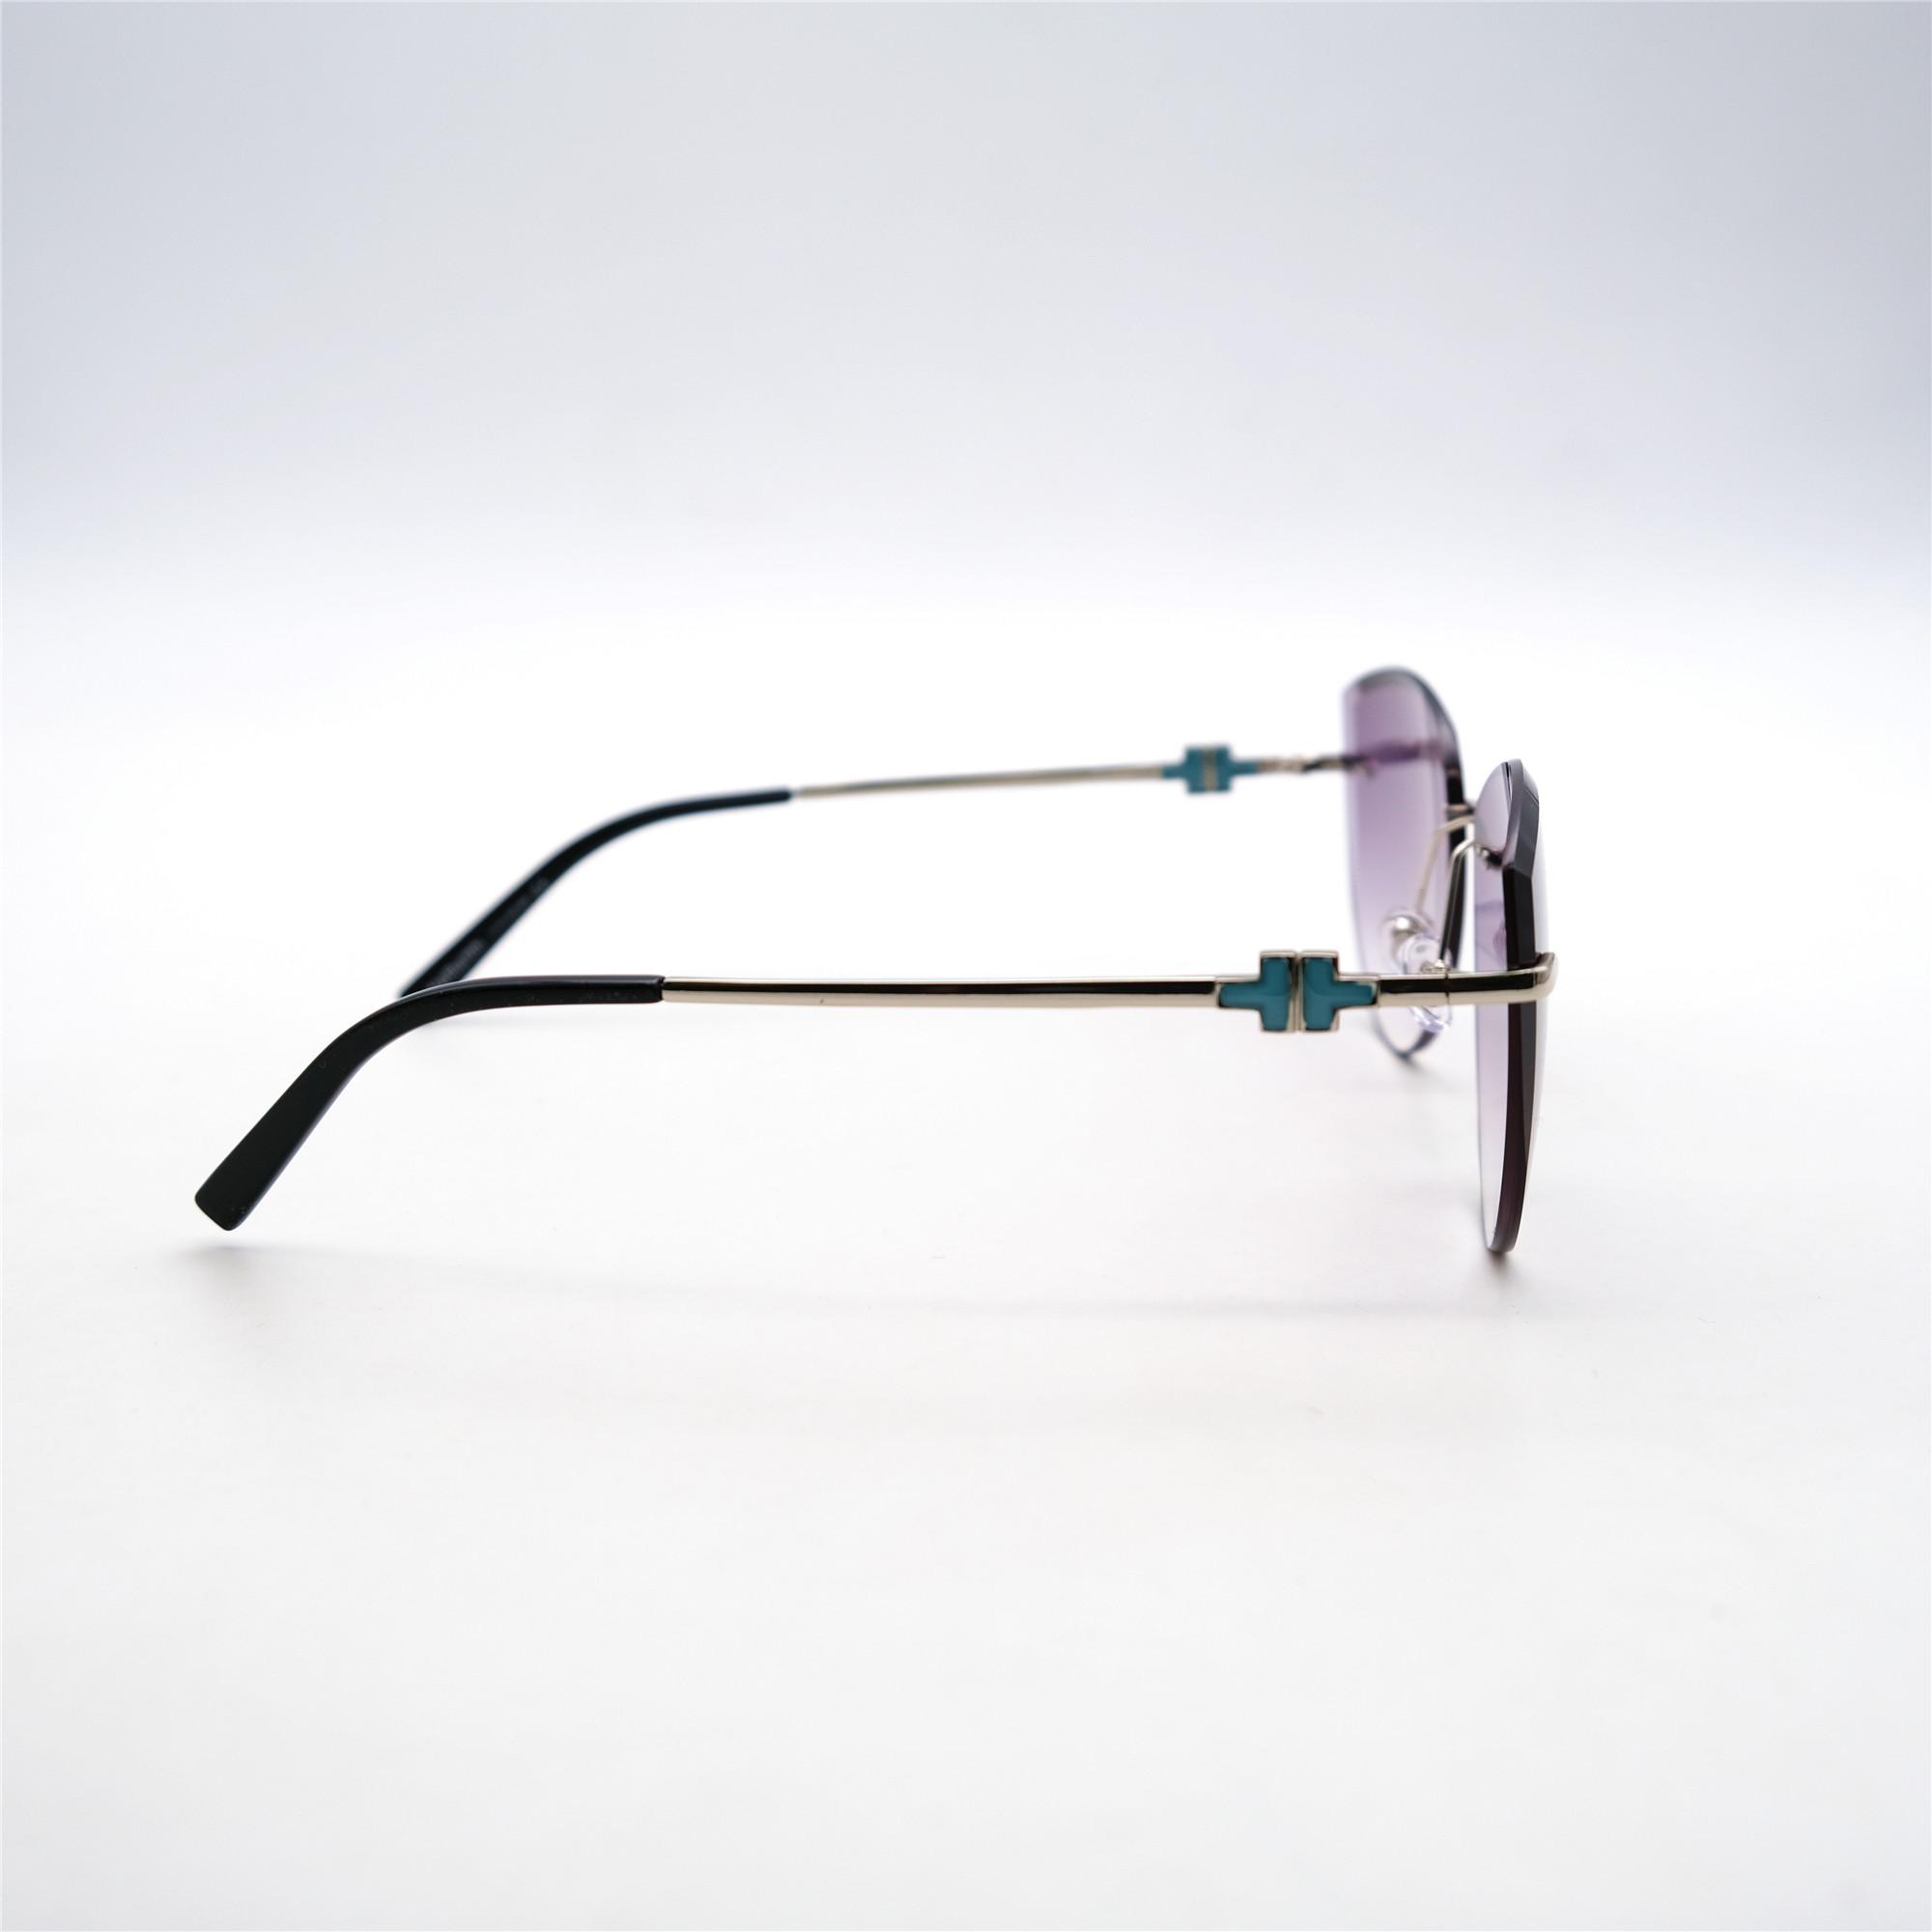  Солнцезащитные очки картинка Женские Yamanni  Авиаторы D2503-C7-16 